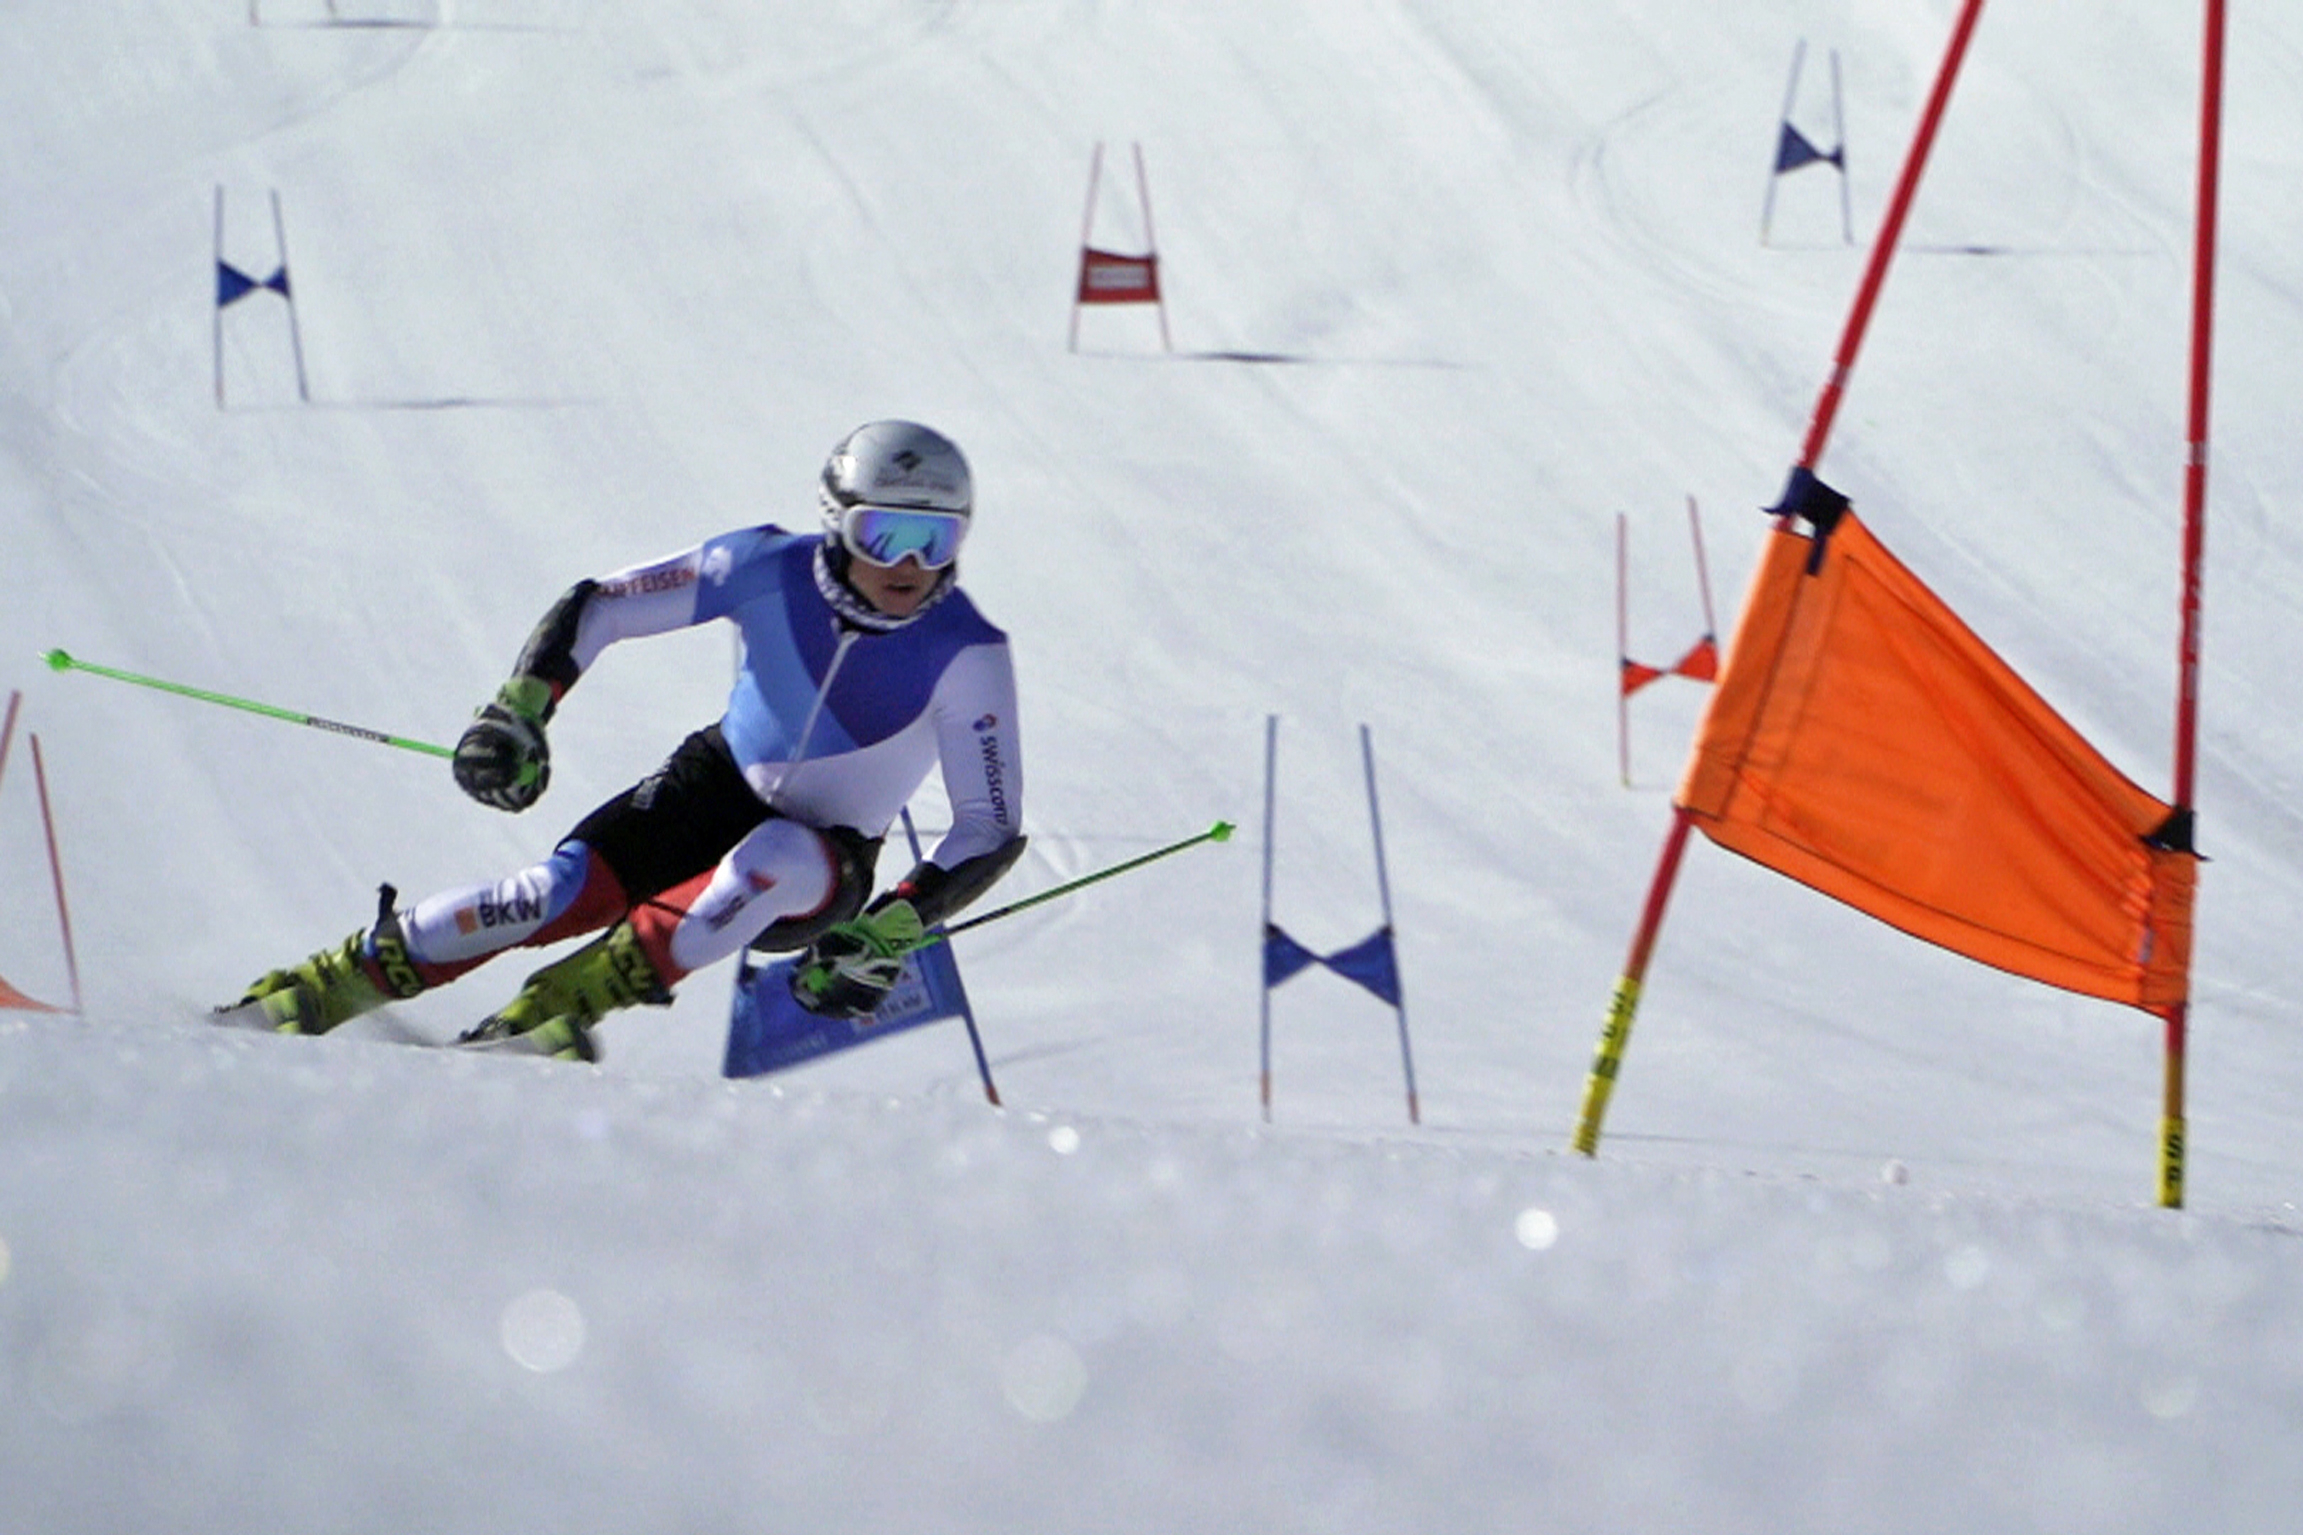 Morgen sind wir Champions - Ski alpin Gaël Zulauf beim Sommertraining in Zermatt 2021